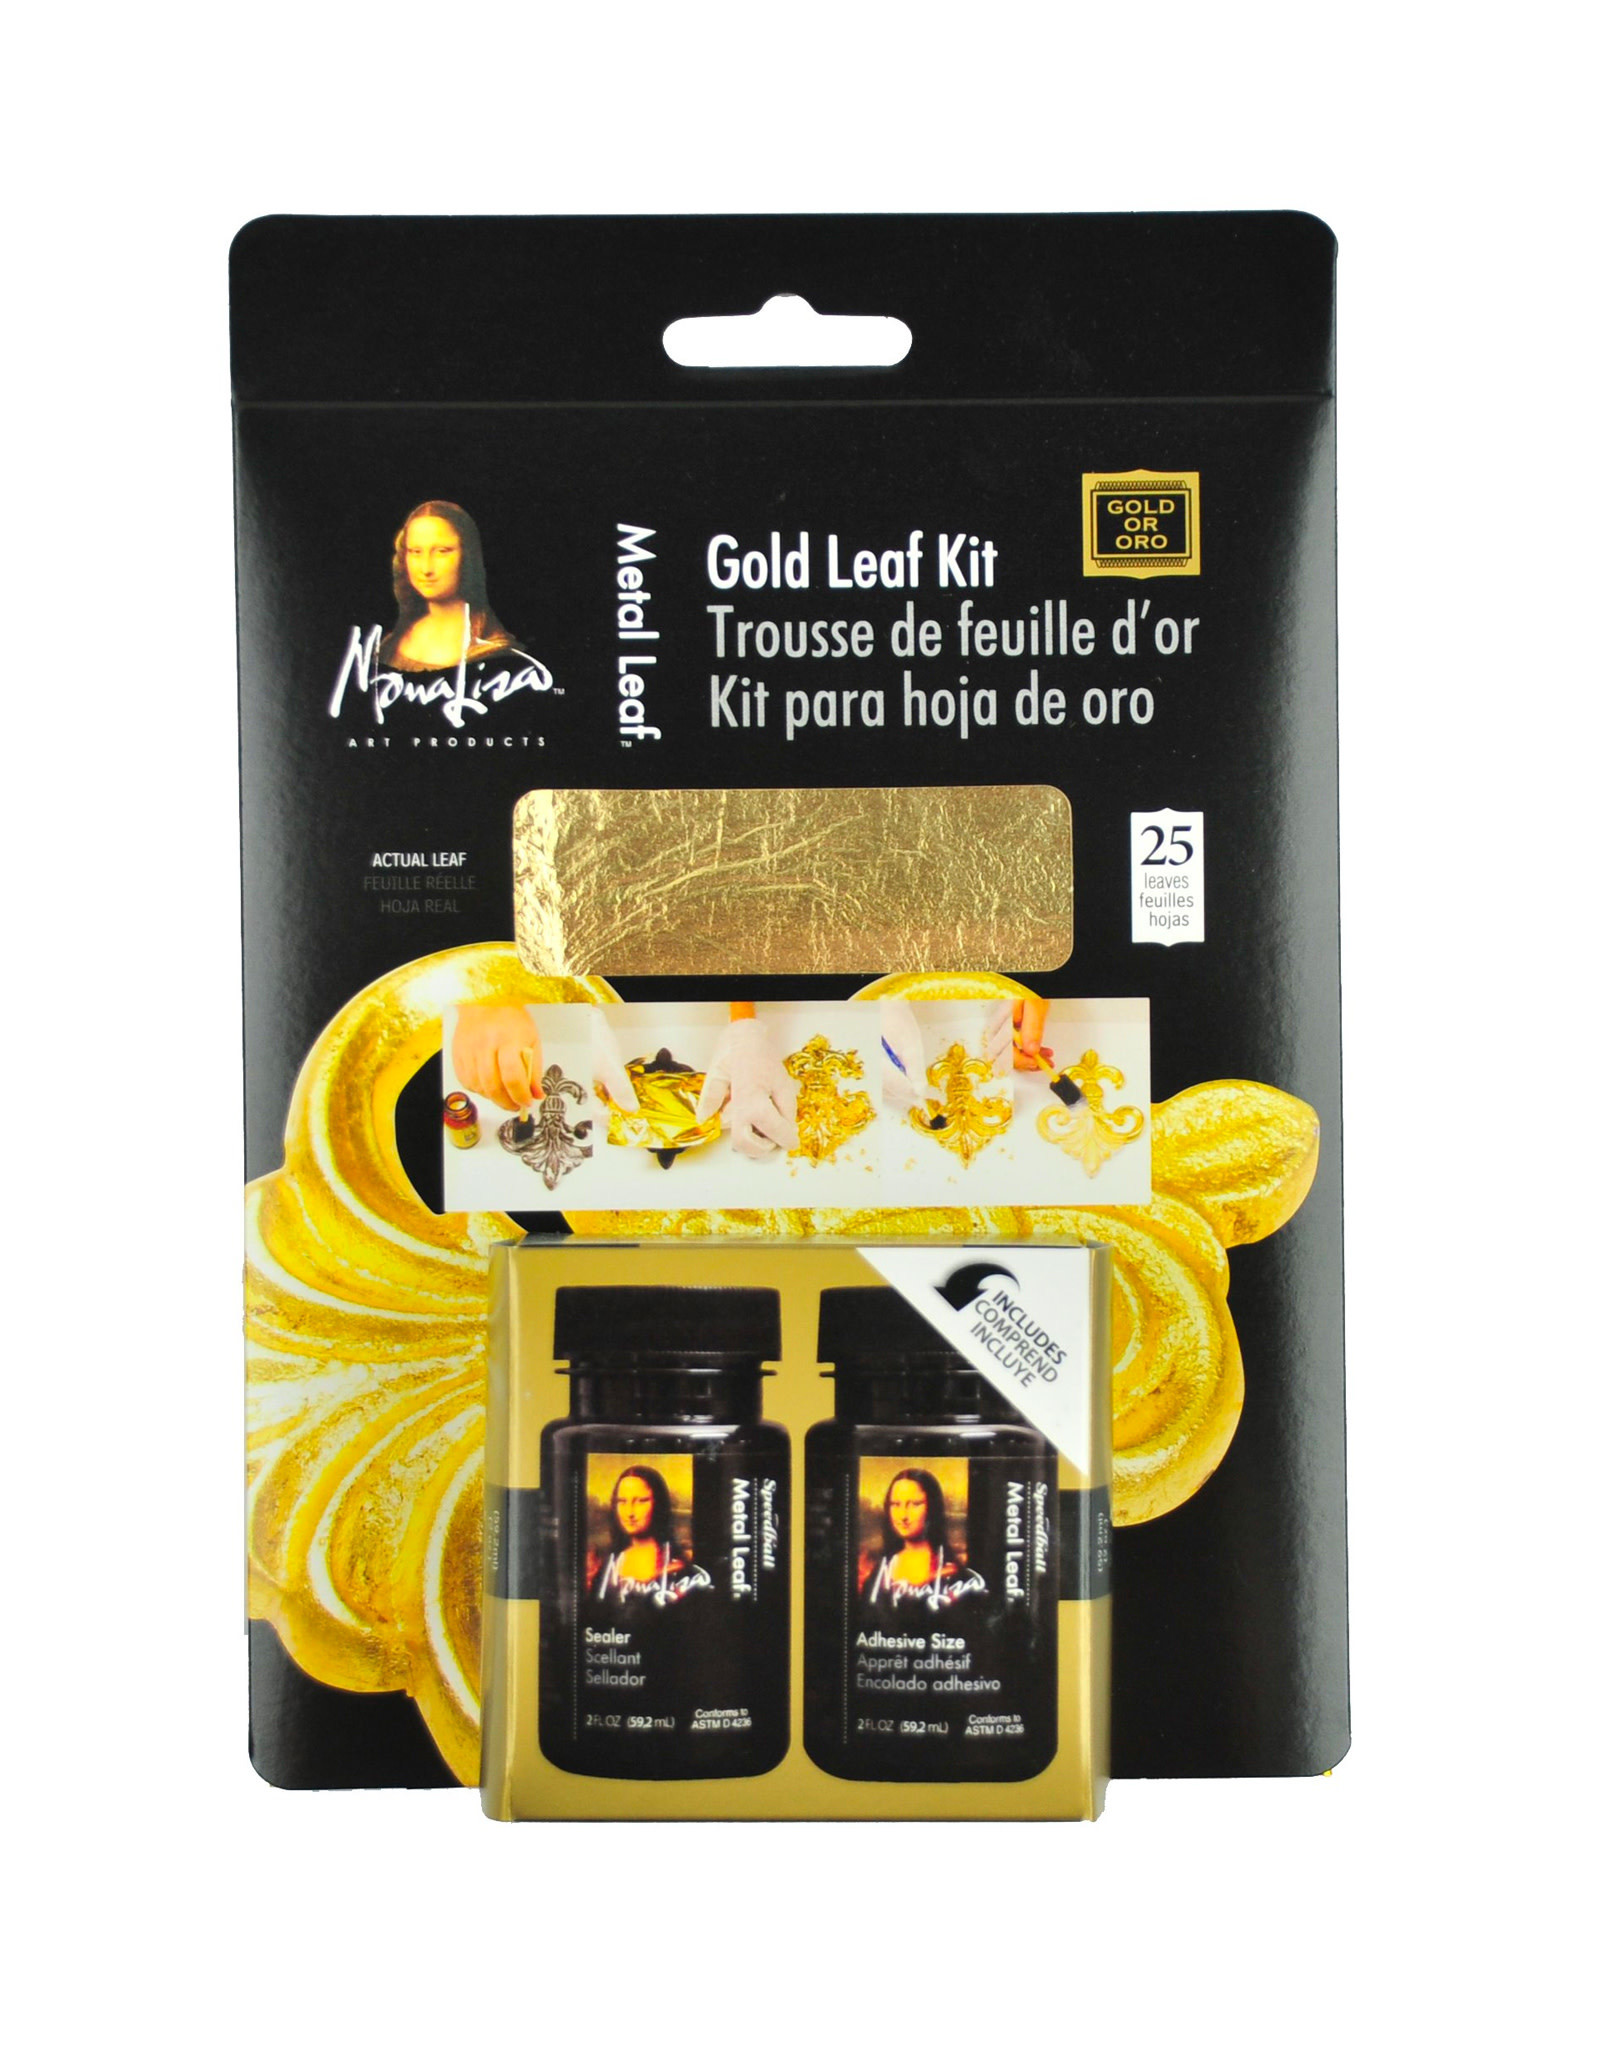 SPEEDBALL ART PRODUCTS Mona Lisa Gold Leaf Kit